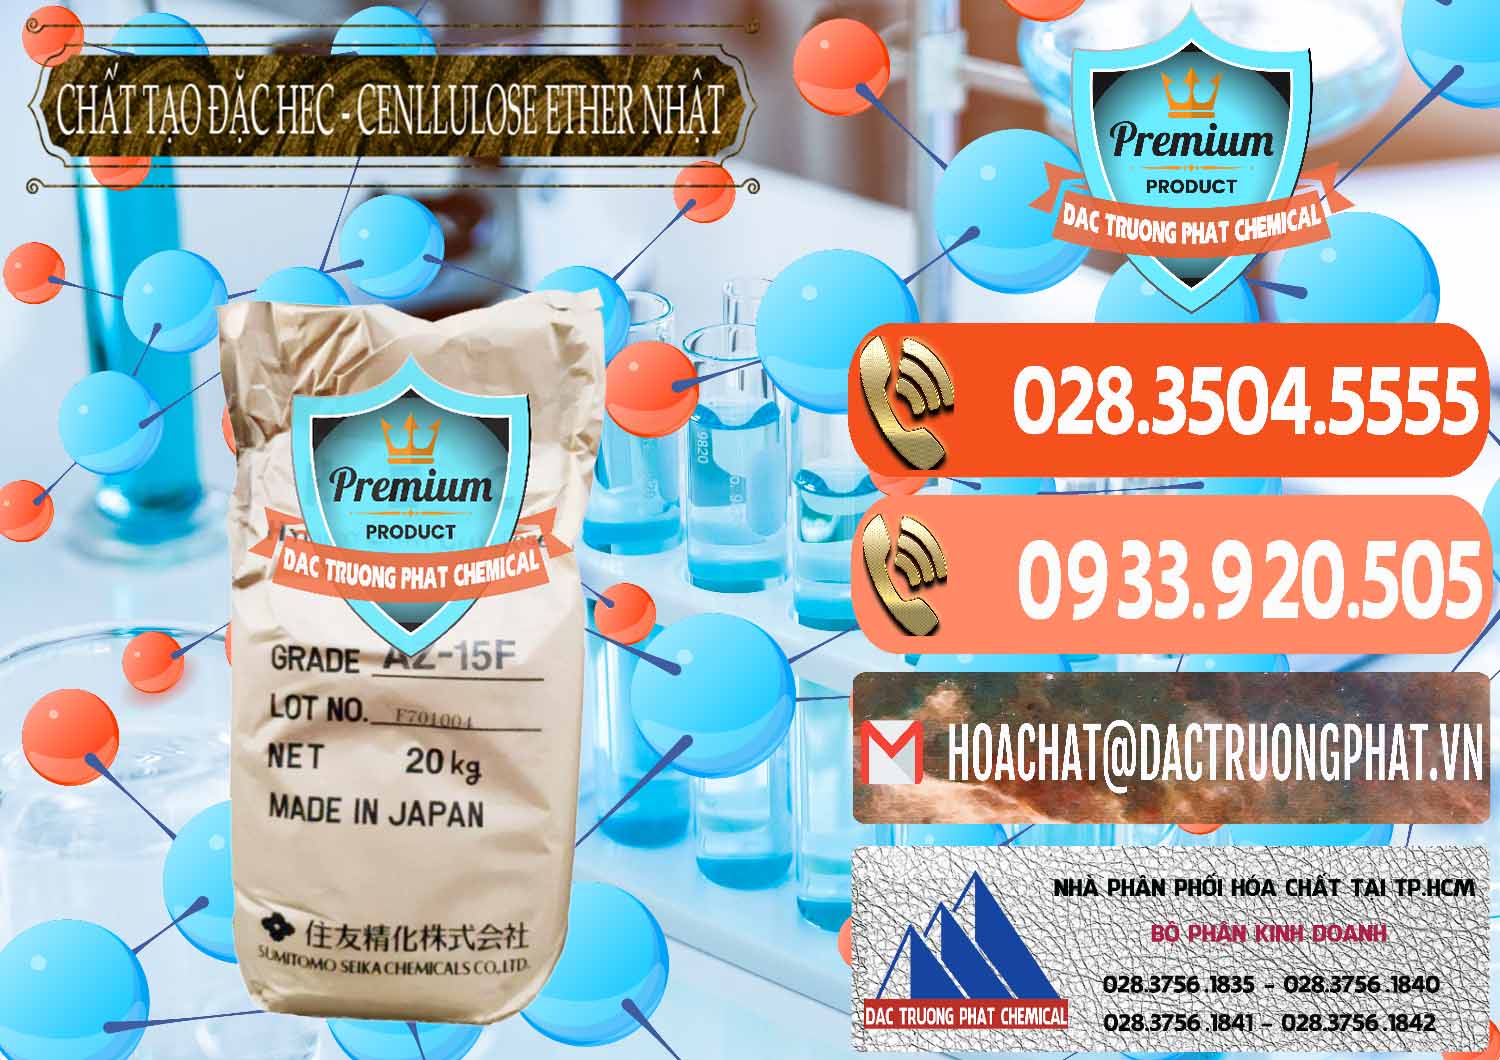 Nơi cung ứng & bán Chất Tạo Đặc Hec Mecellose – Cenllulose Ether Nhật Bản Japan - 0367 - Cty phân phối và bán hóa chất tại TP.HCM - hoachatmientay.com